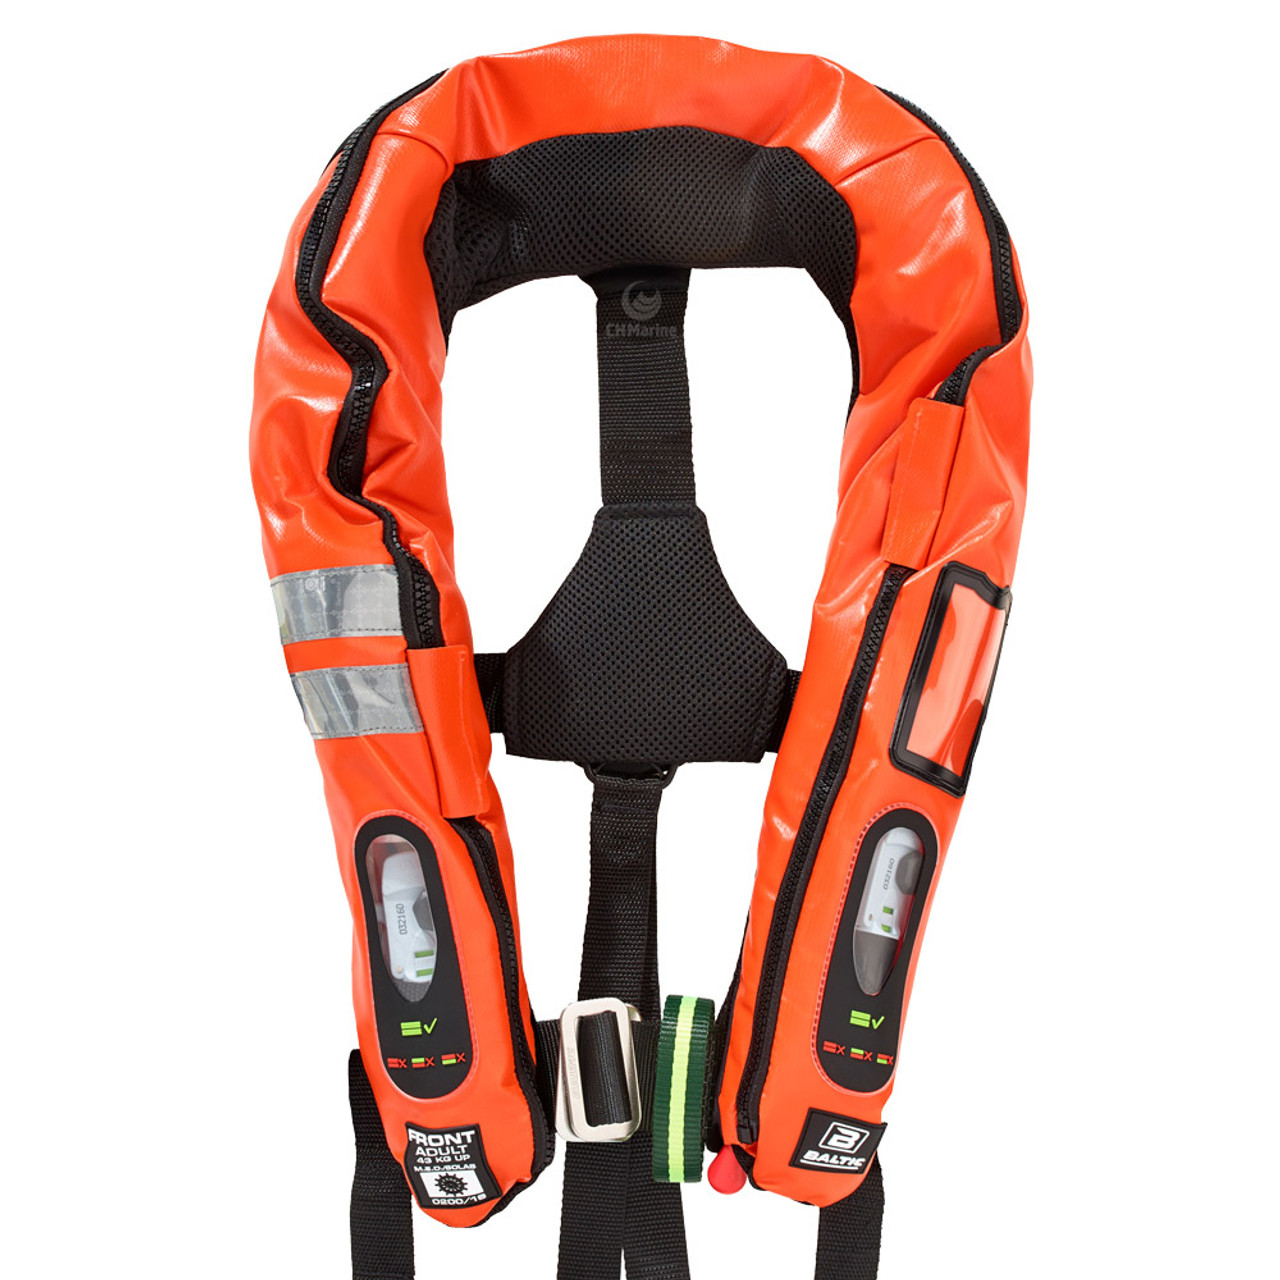 SOLAS Inflatable Lifejacket - 150N & 275N